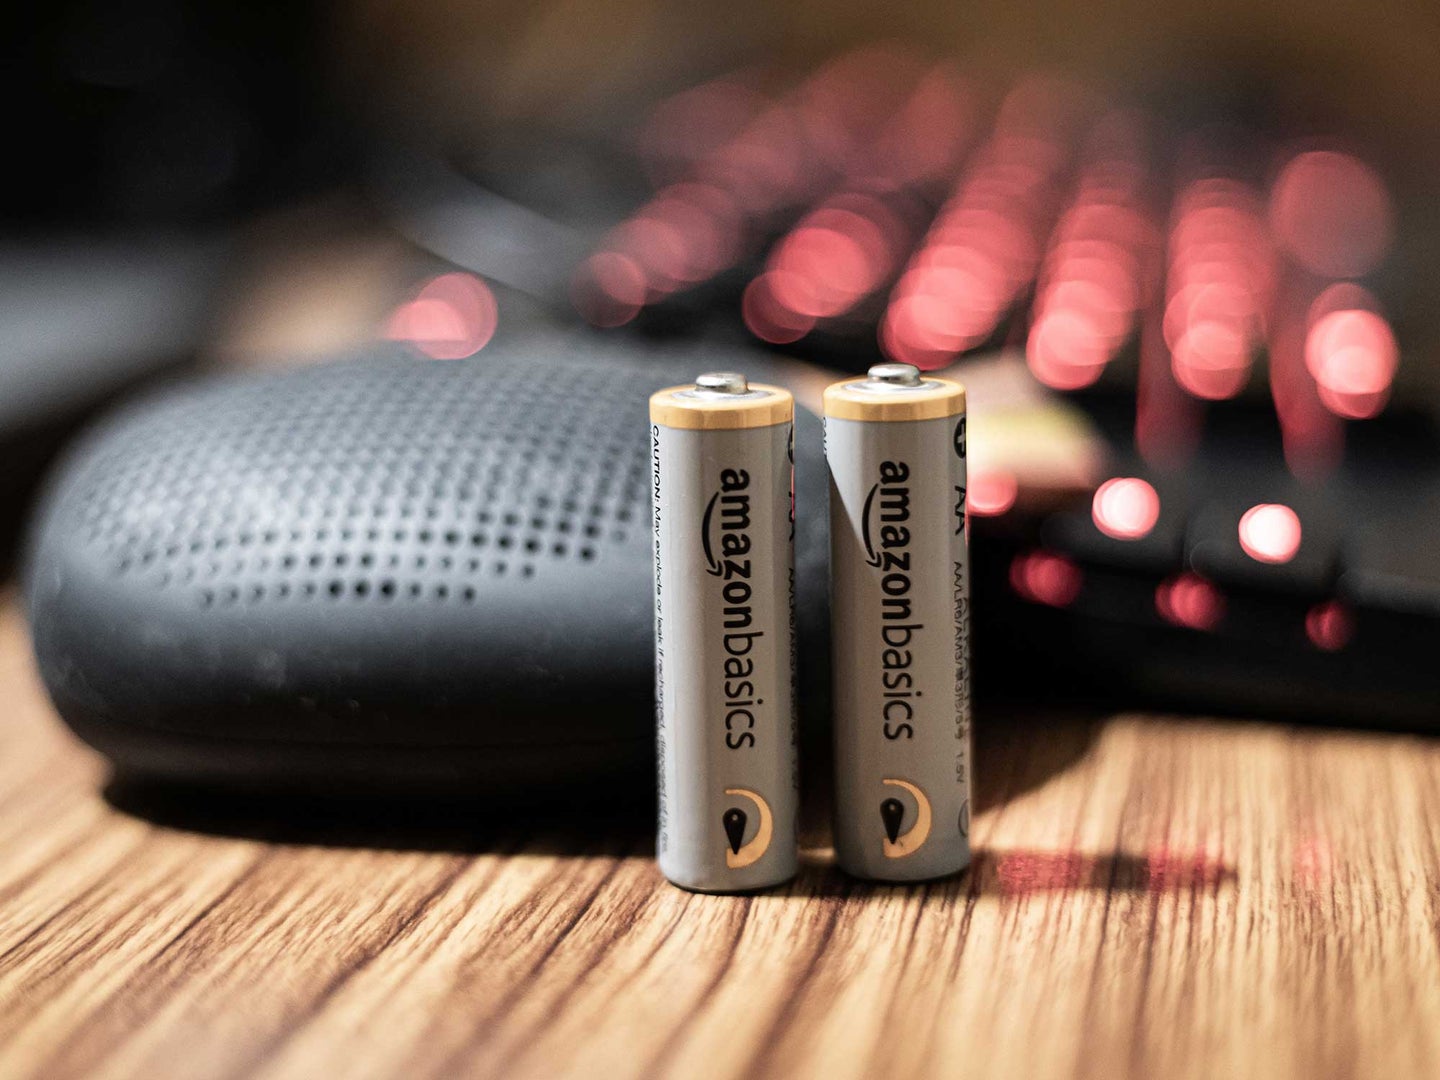 Amazon AA batteries